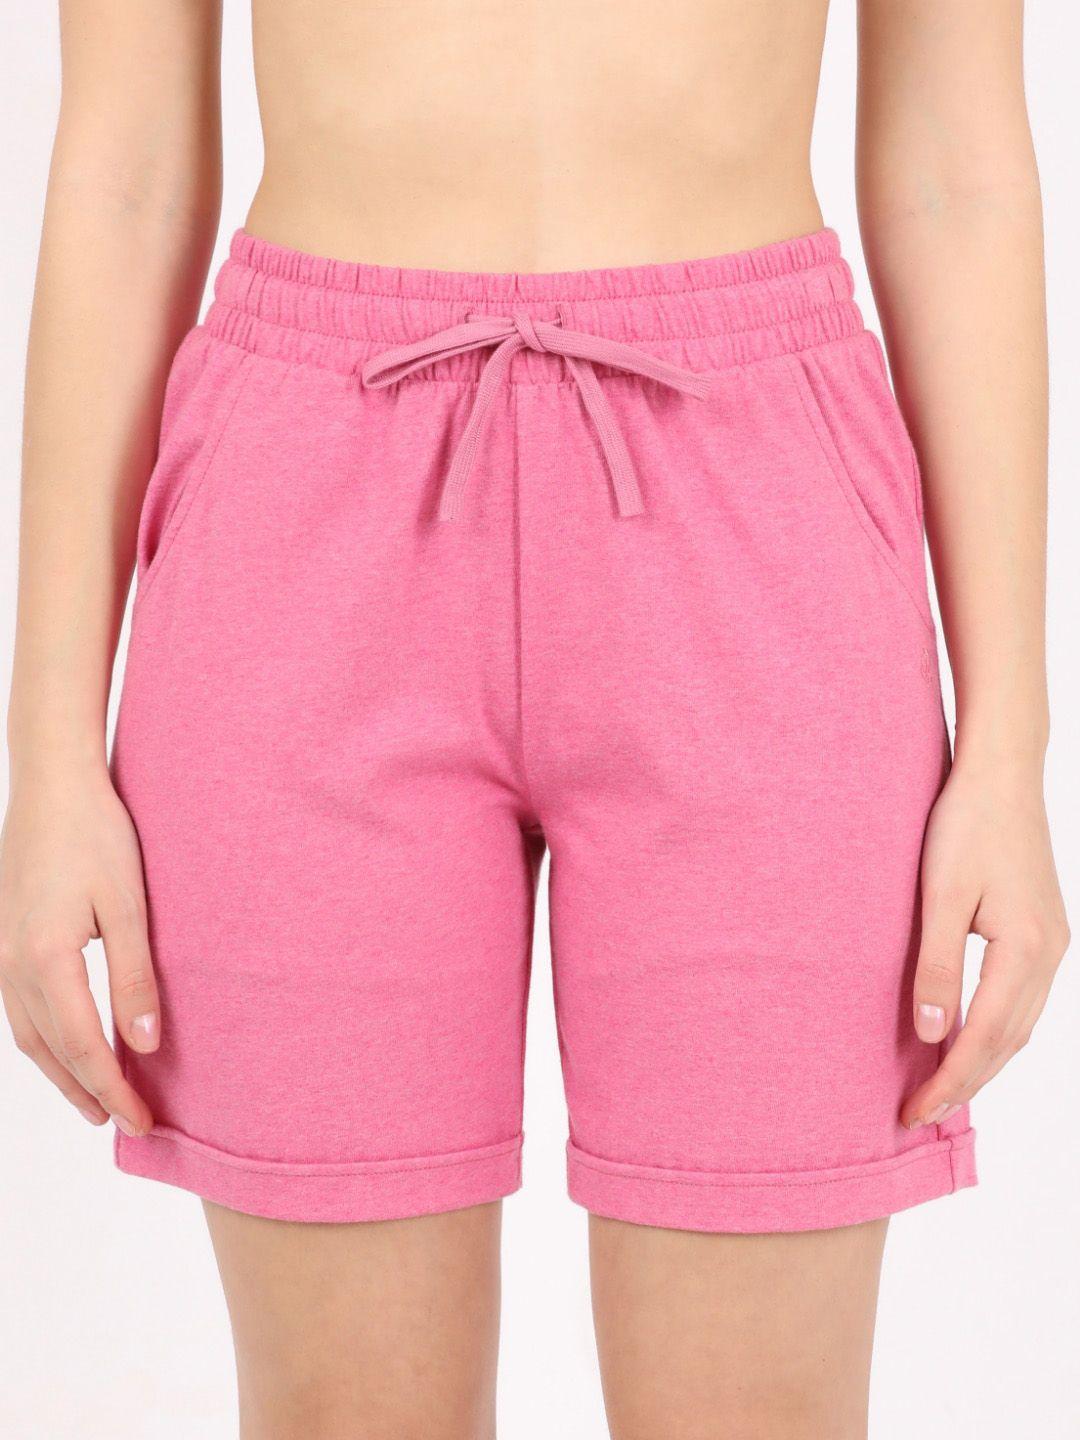 jockey-women-pink-cotton-lounge-shorts